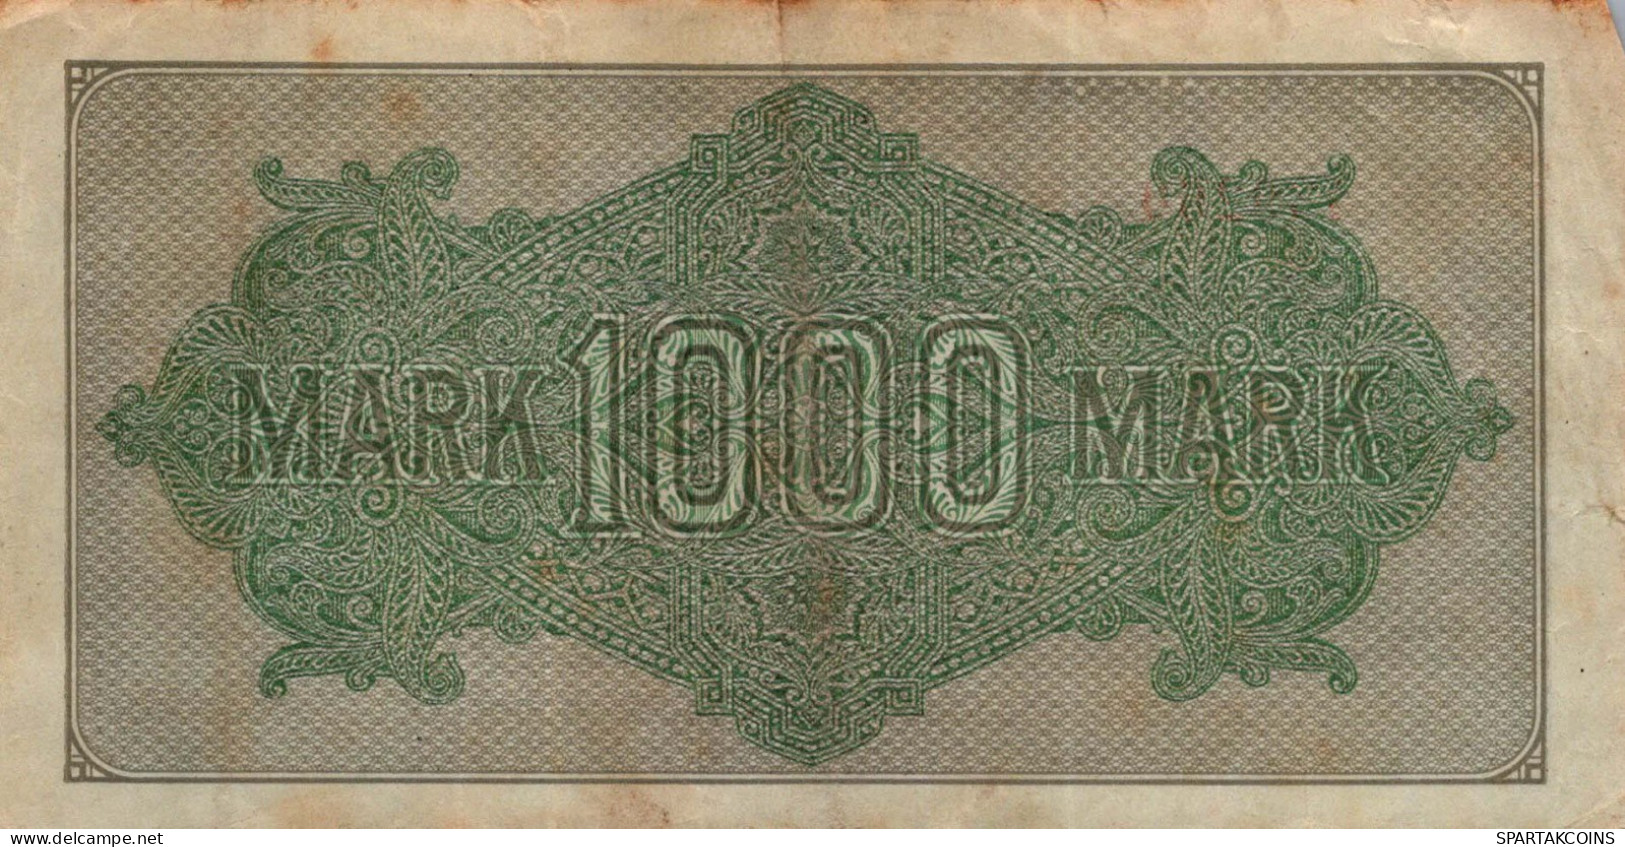 1000 MARK 1922 Stadt BERLIN DEUTSCHLAND Papiergeld Banknote #PL028 - Lokale Ausgaben